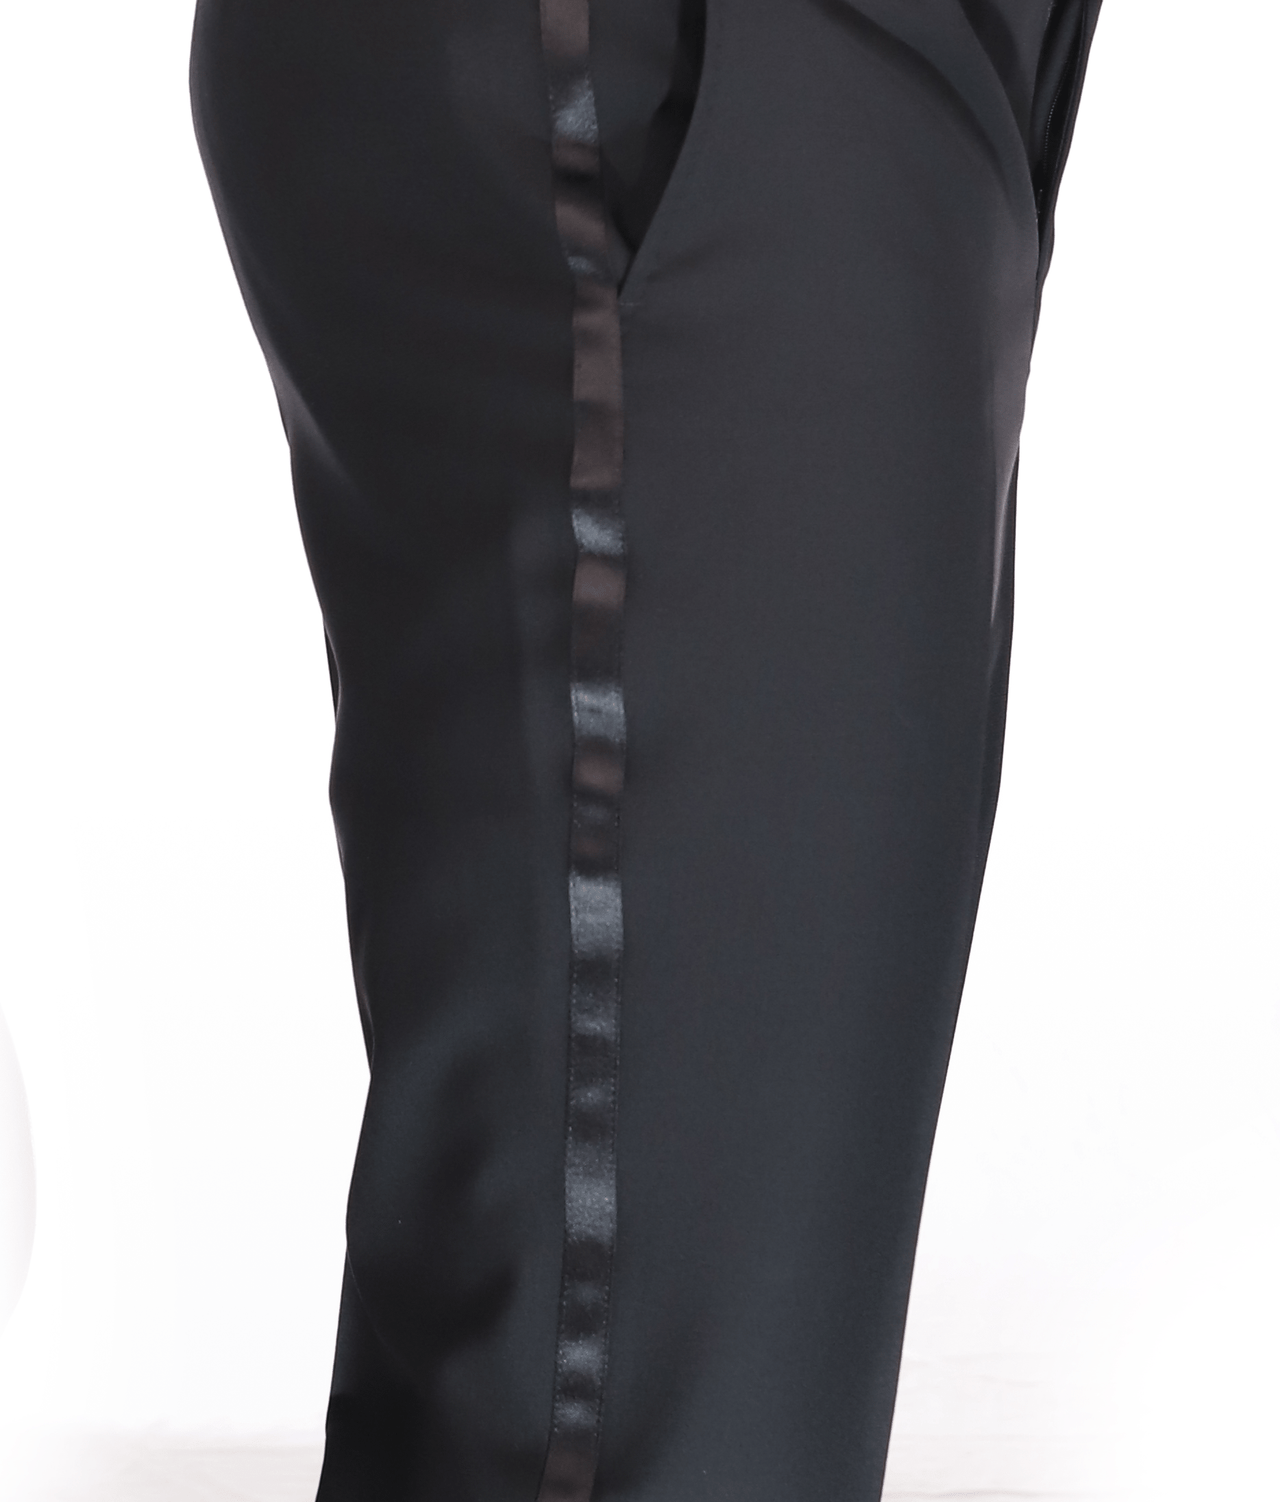 Blujacket SUITS Blujacket Men's Black 100% Italian Wool Canvassed Regular Fit Tuxedo Suit